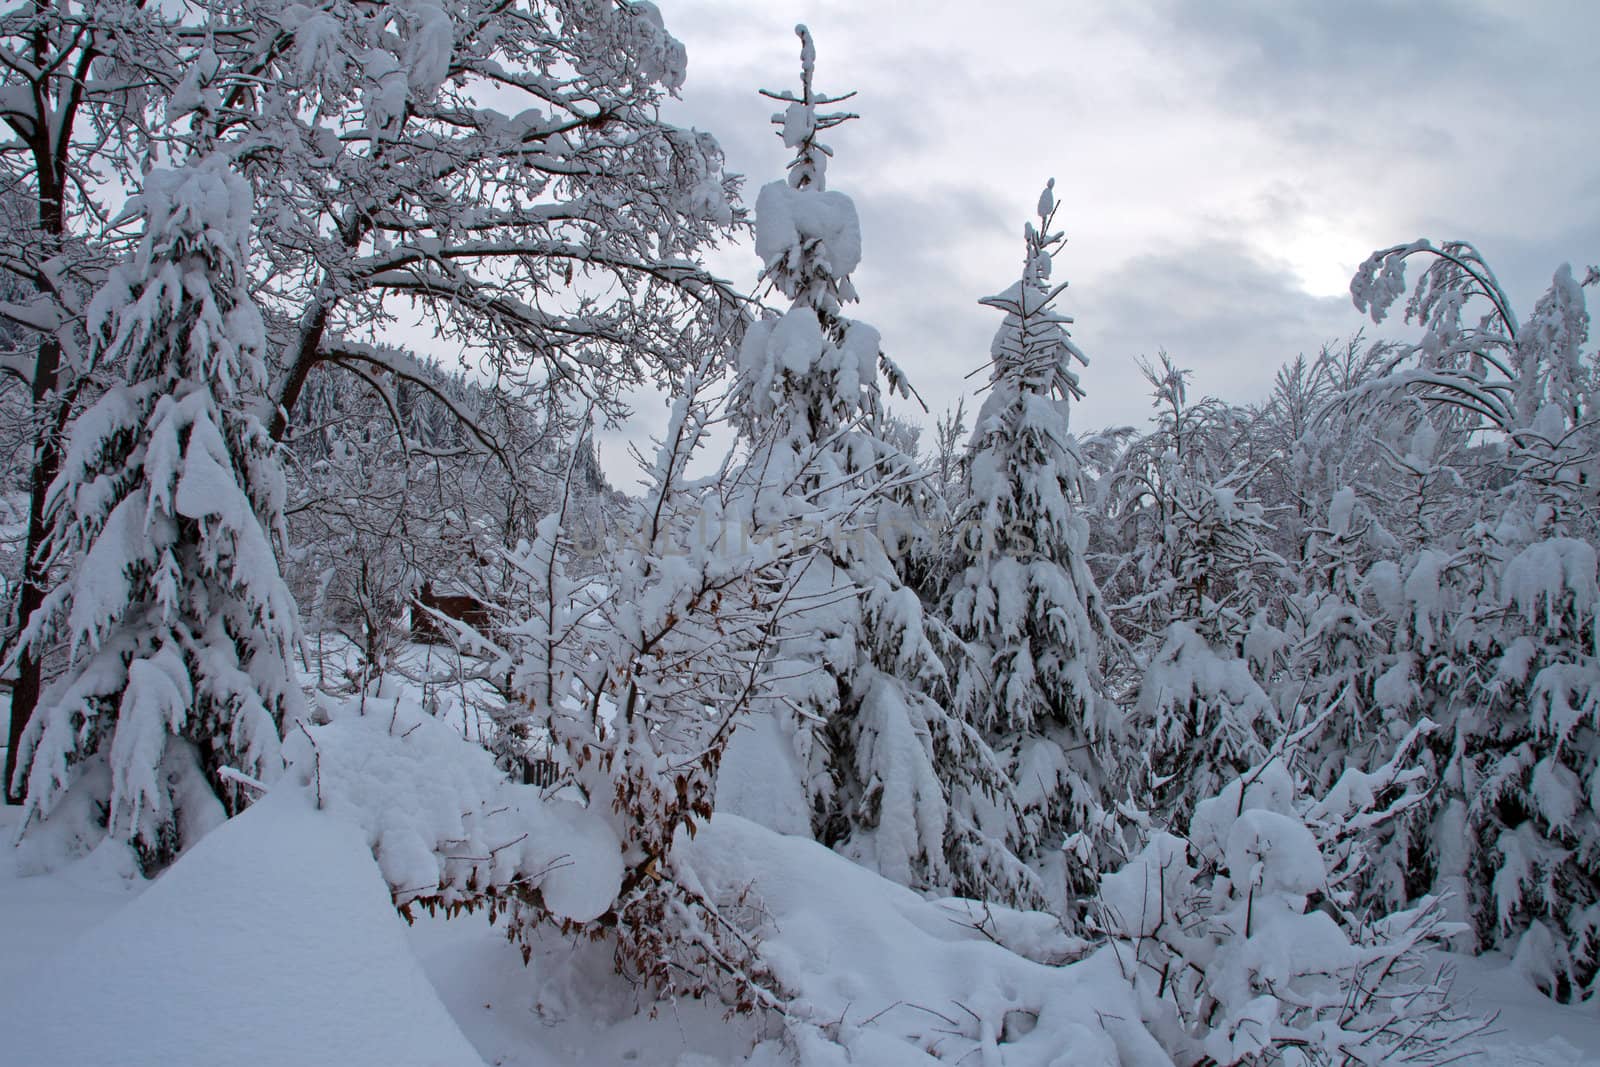 A landscape in winter by renegadewanderer